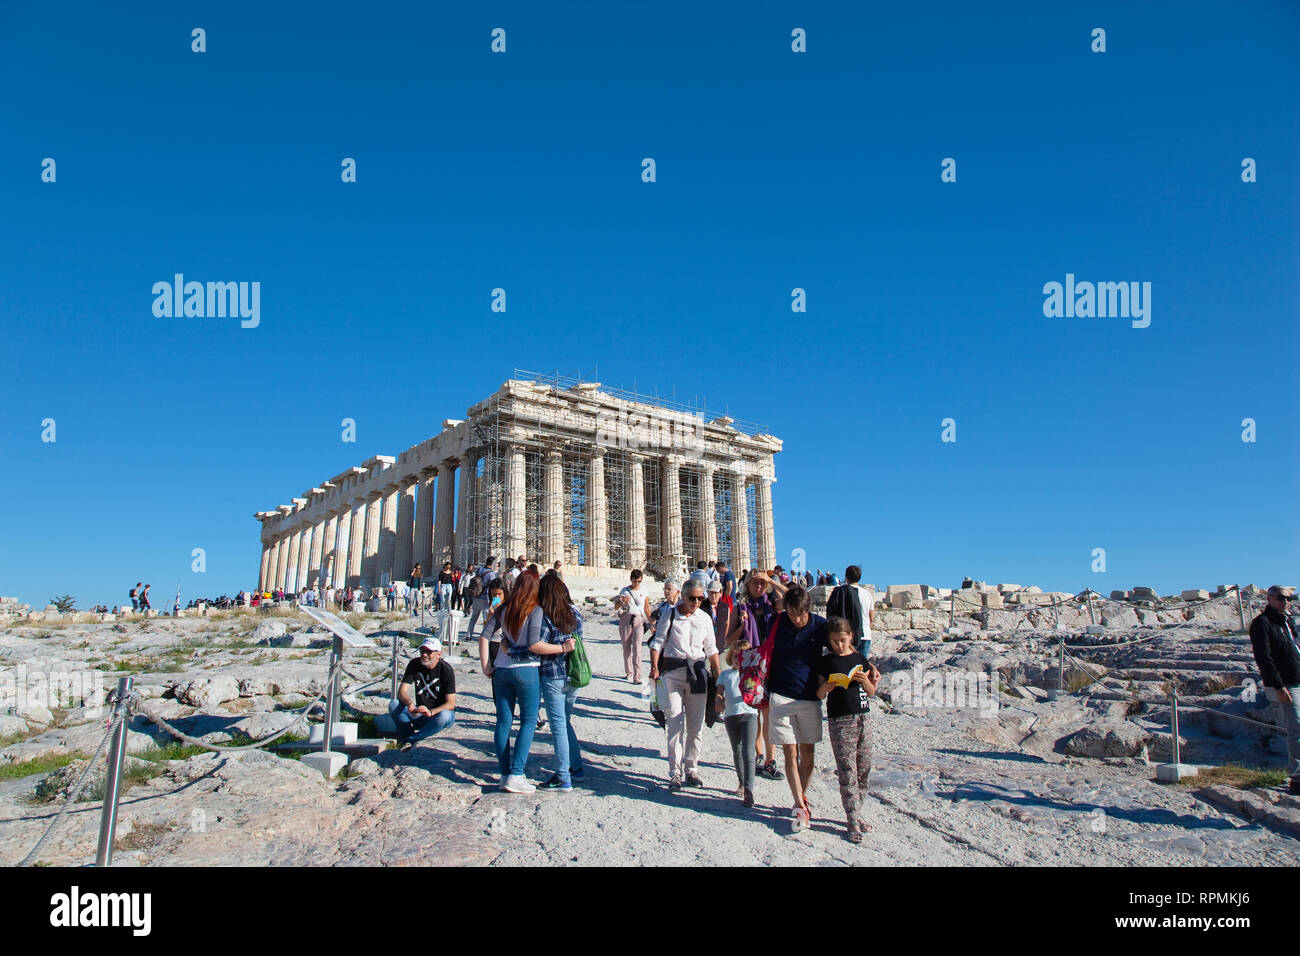 Greece, Attica, Athens, Acropolis, Parthenon with crowds of tourists. Stock Photo